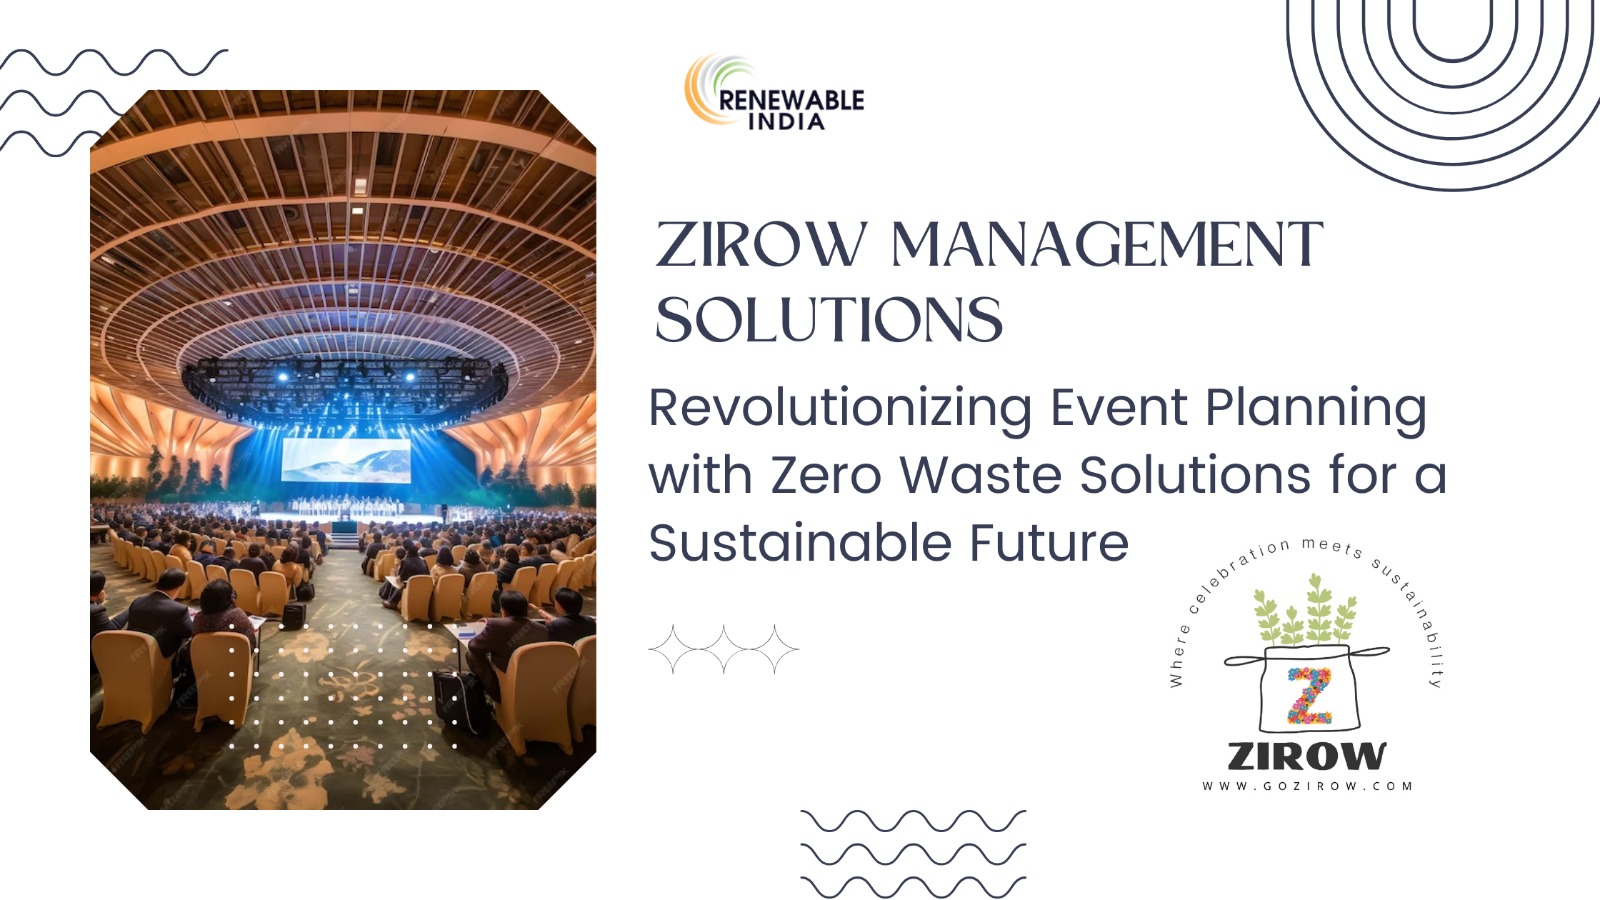 Zirow Management Solutions